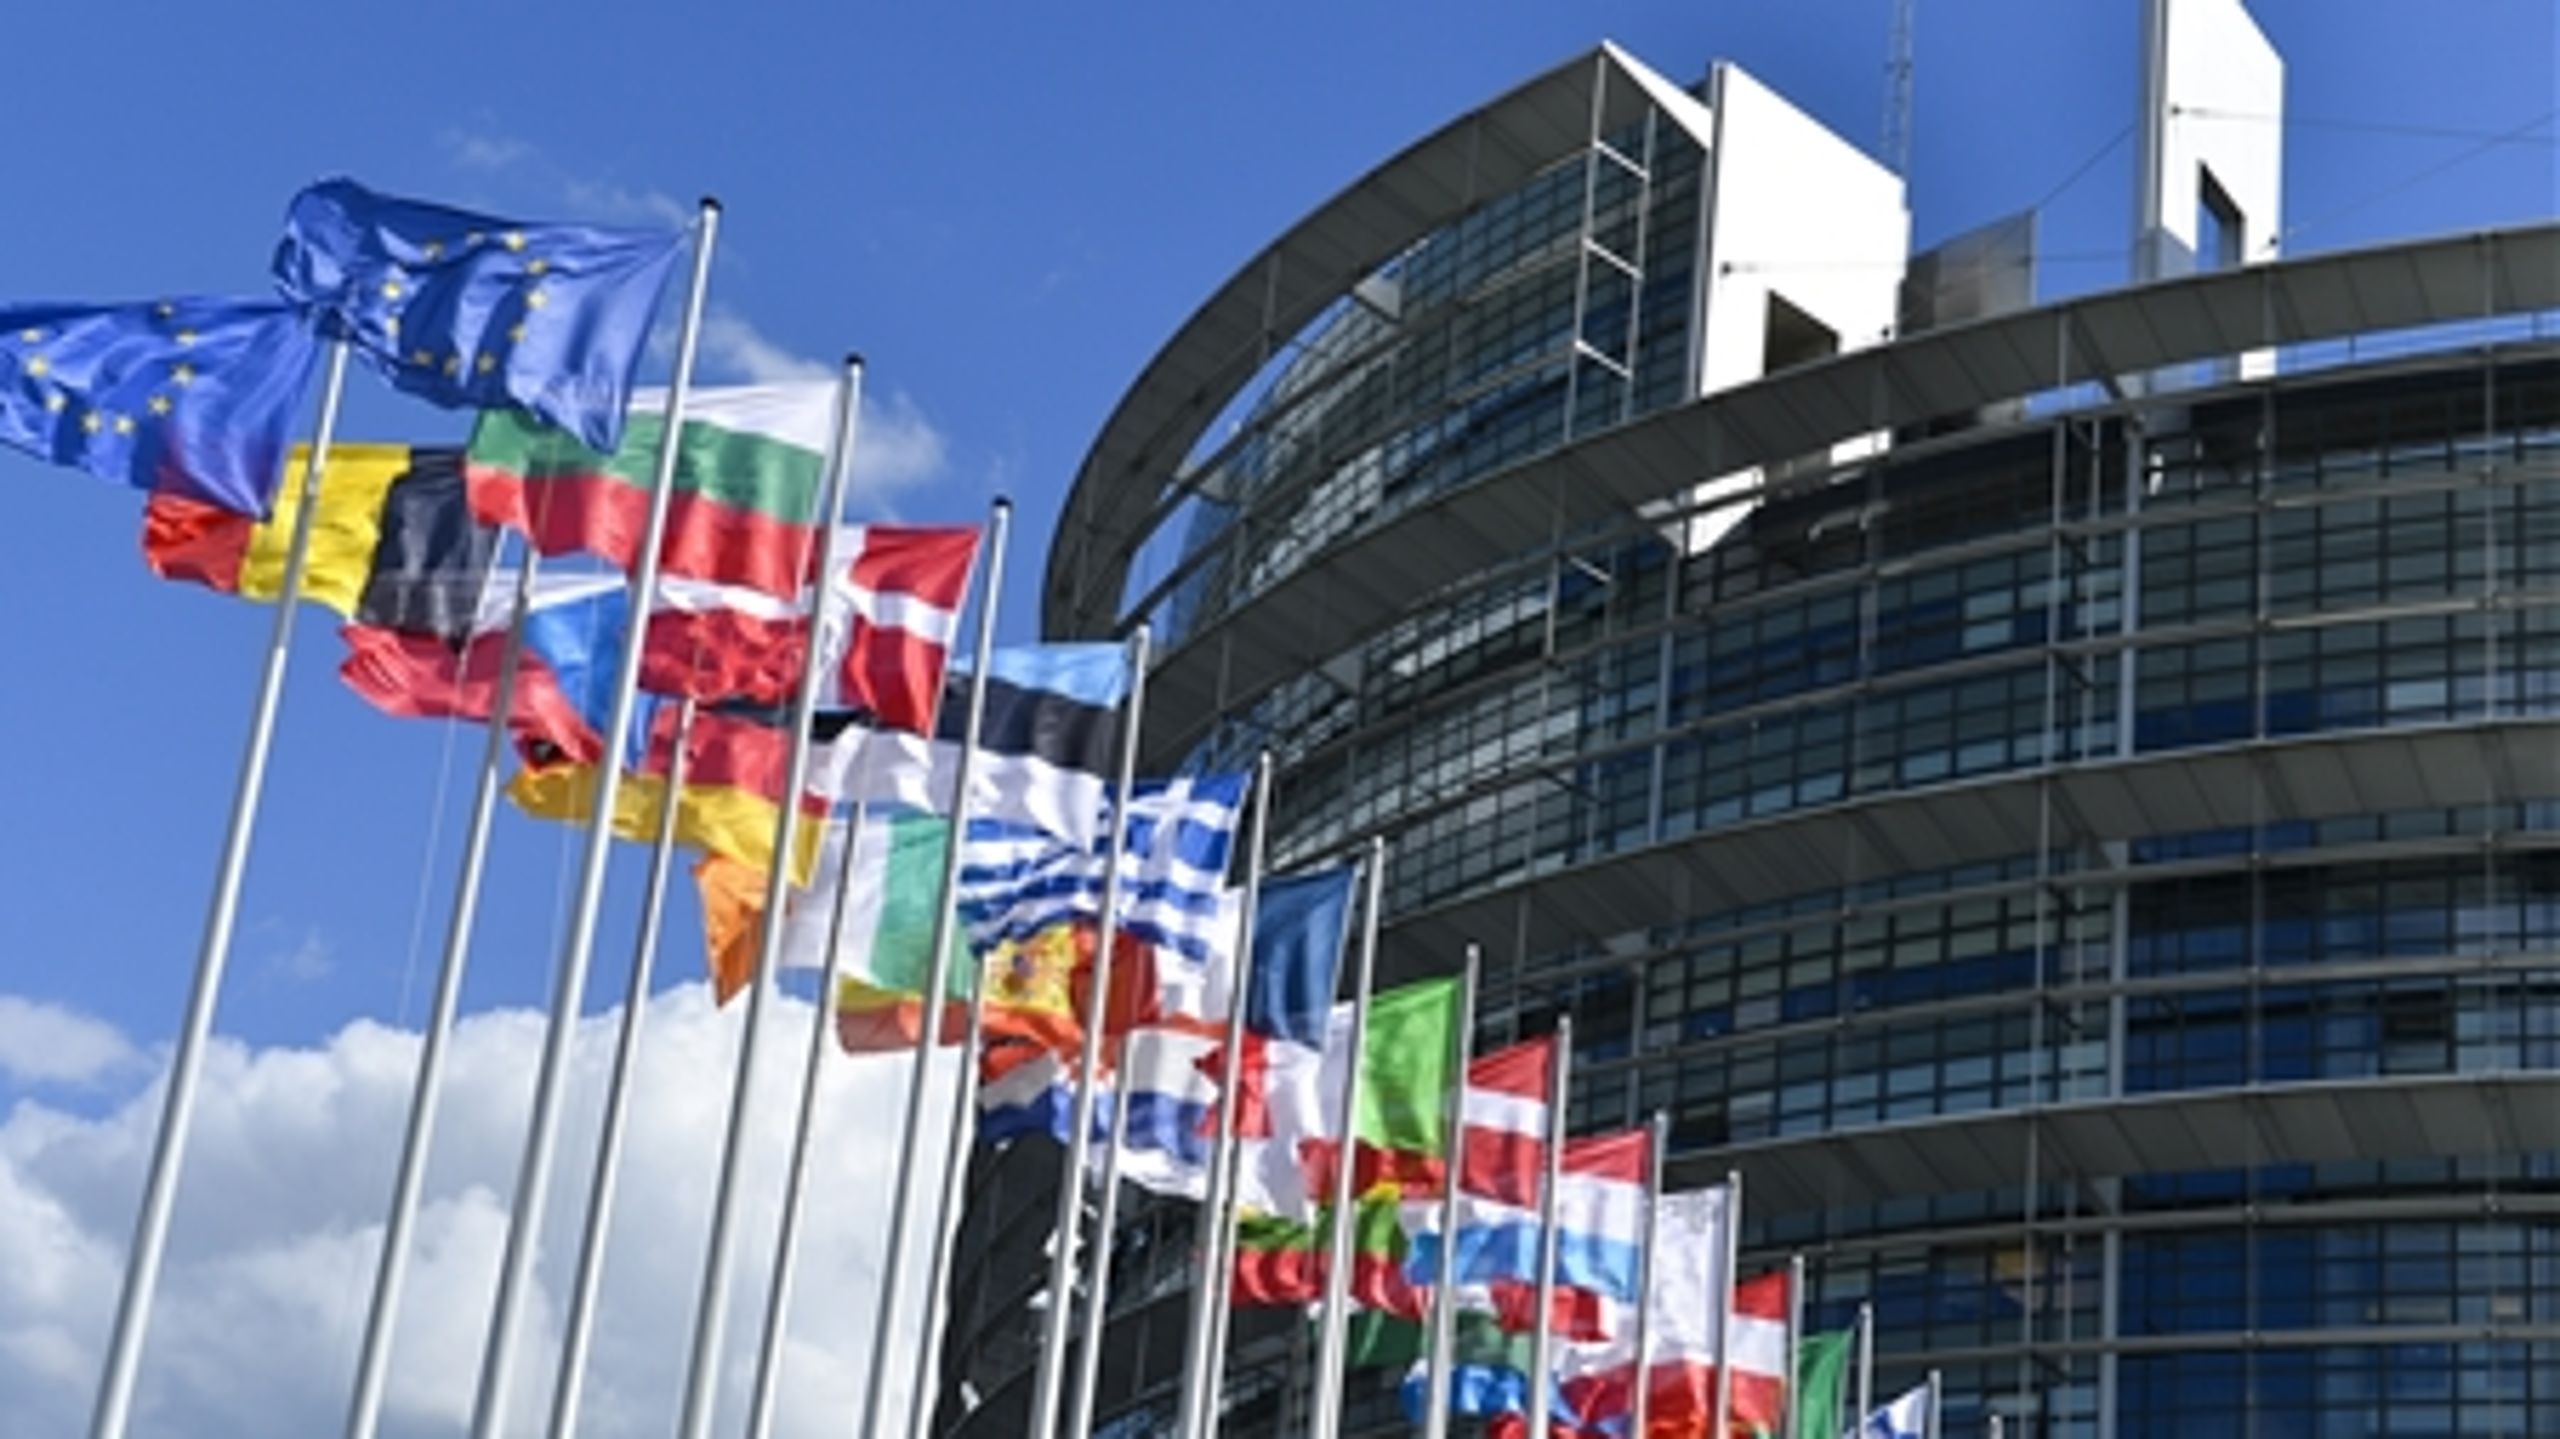 Det er i denne bygning i Strasbourg, at de nyvalgte EU-parlamentarikere mødes for første gang.